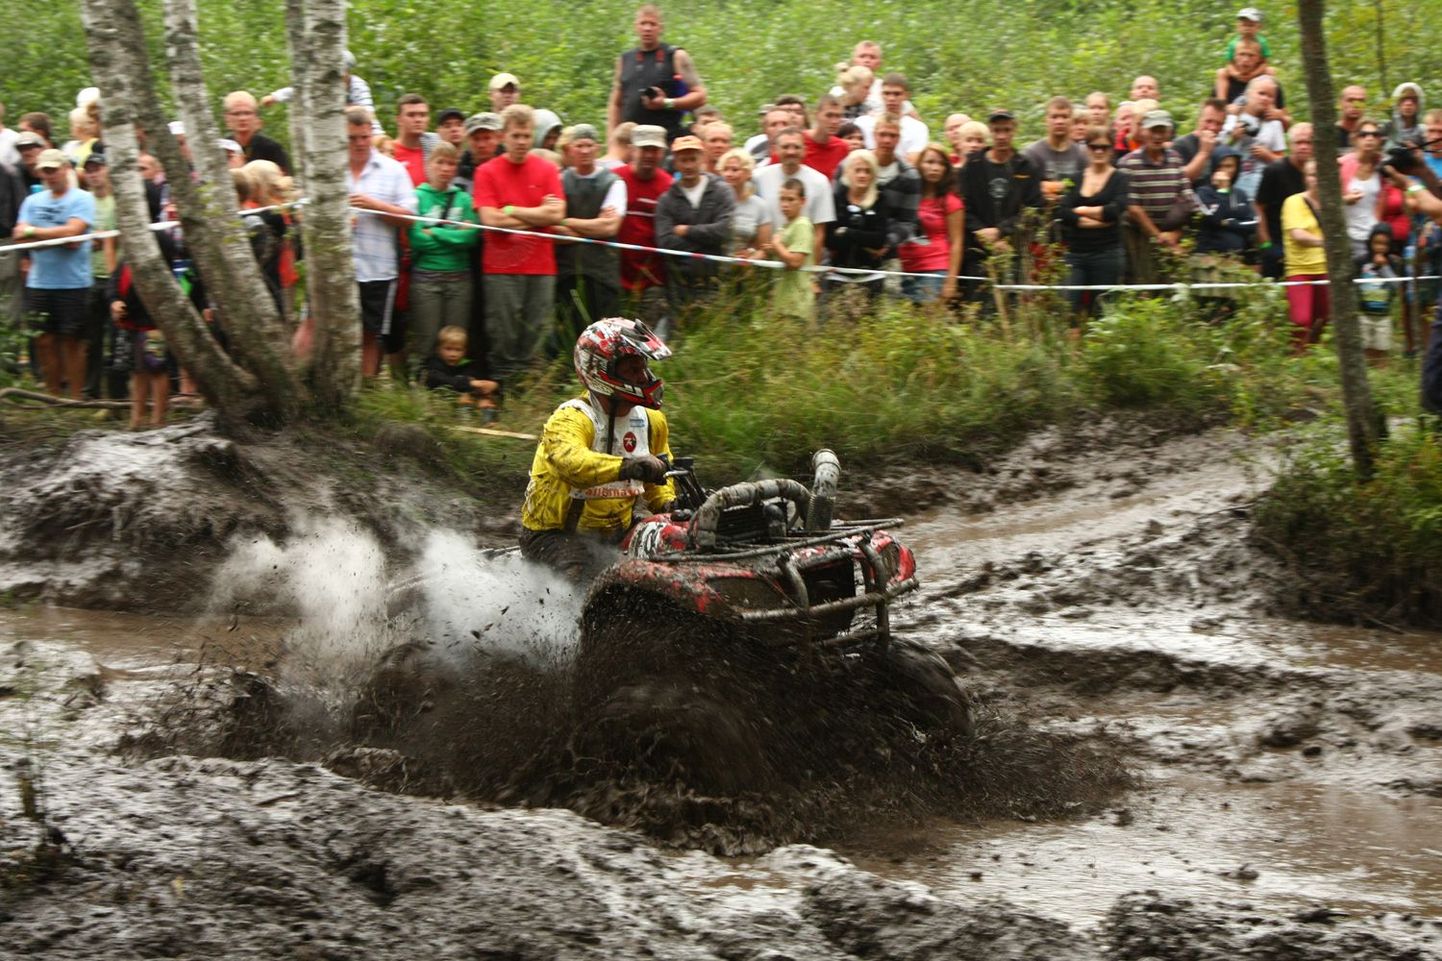 Klaperjaht on aastaid pakkunud mudaseid elamusi nii võistlejatele kui pealtvaatajatele. Pilt on tehtud aastal 2011, mil võistlus toimus veel Jõgevestel.